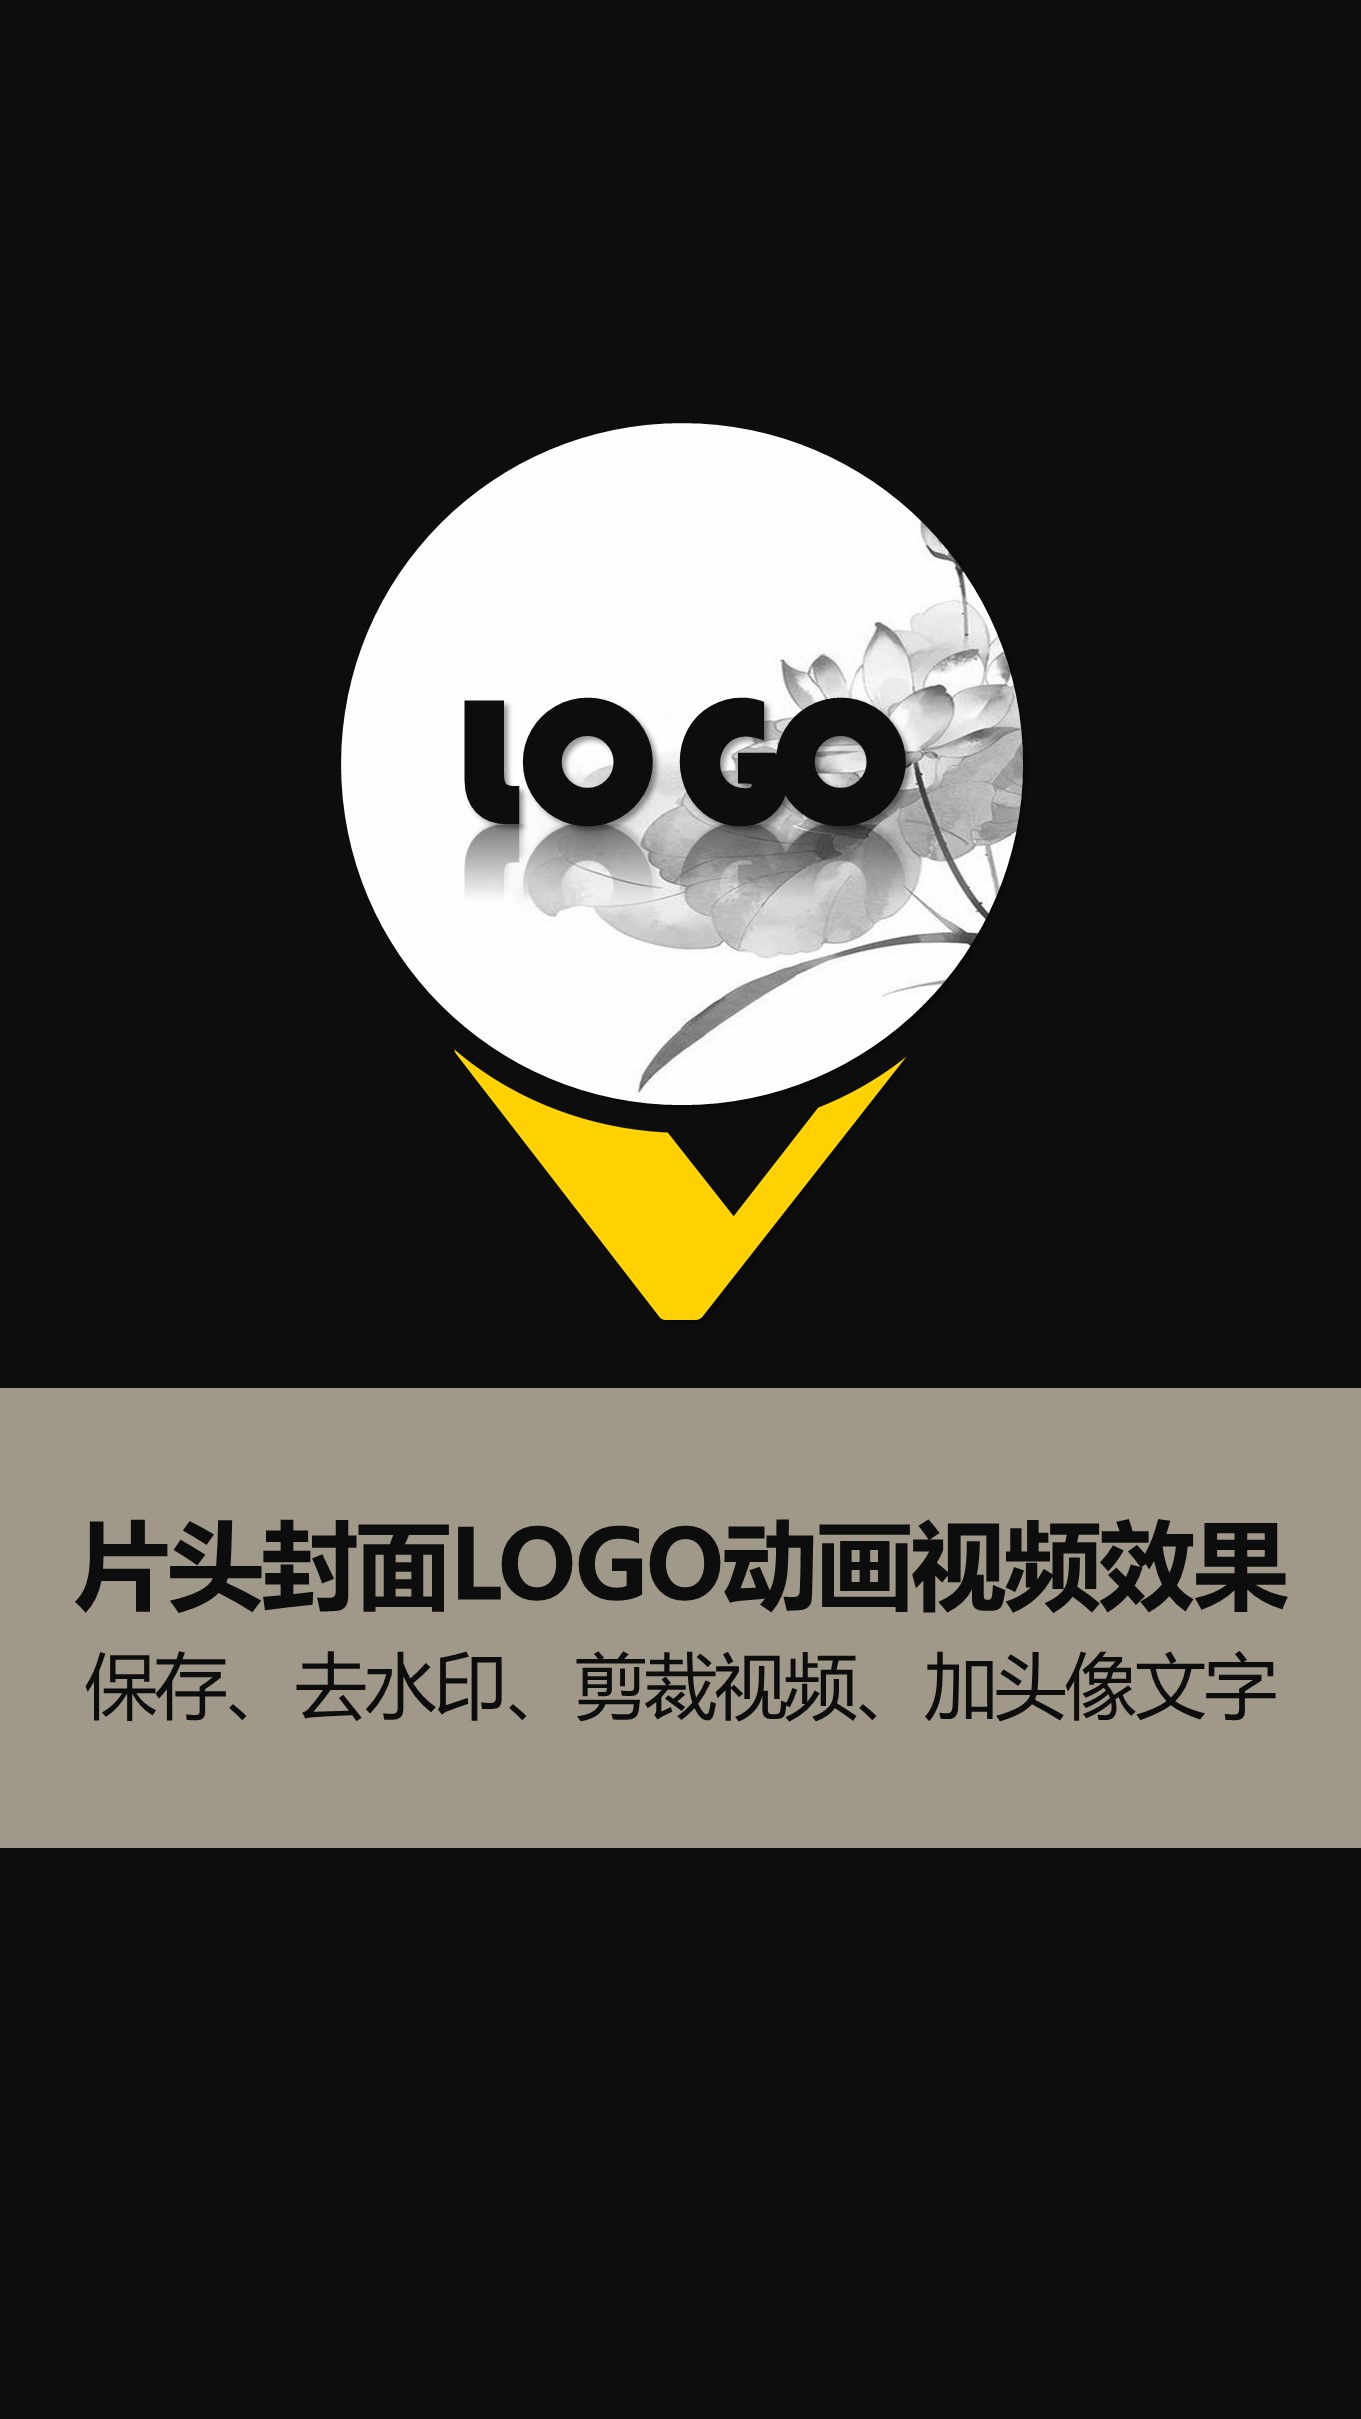 20-咖啡灰片头片尾封面LOGO动画竖版 (8).JPG